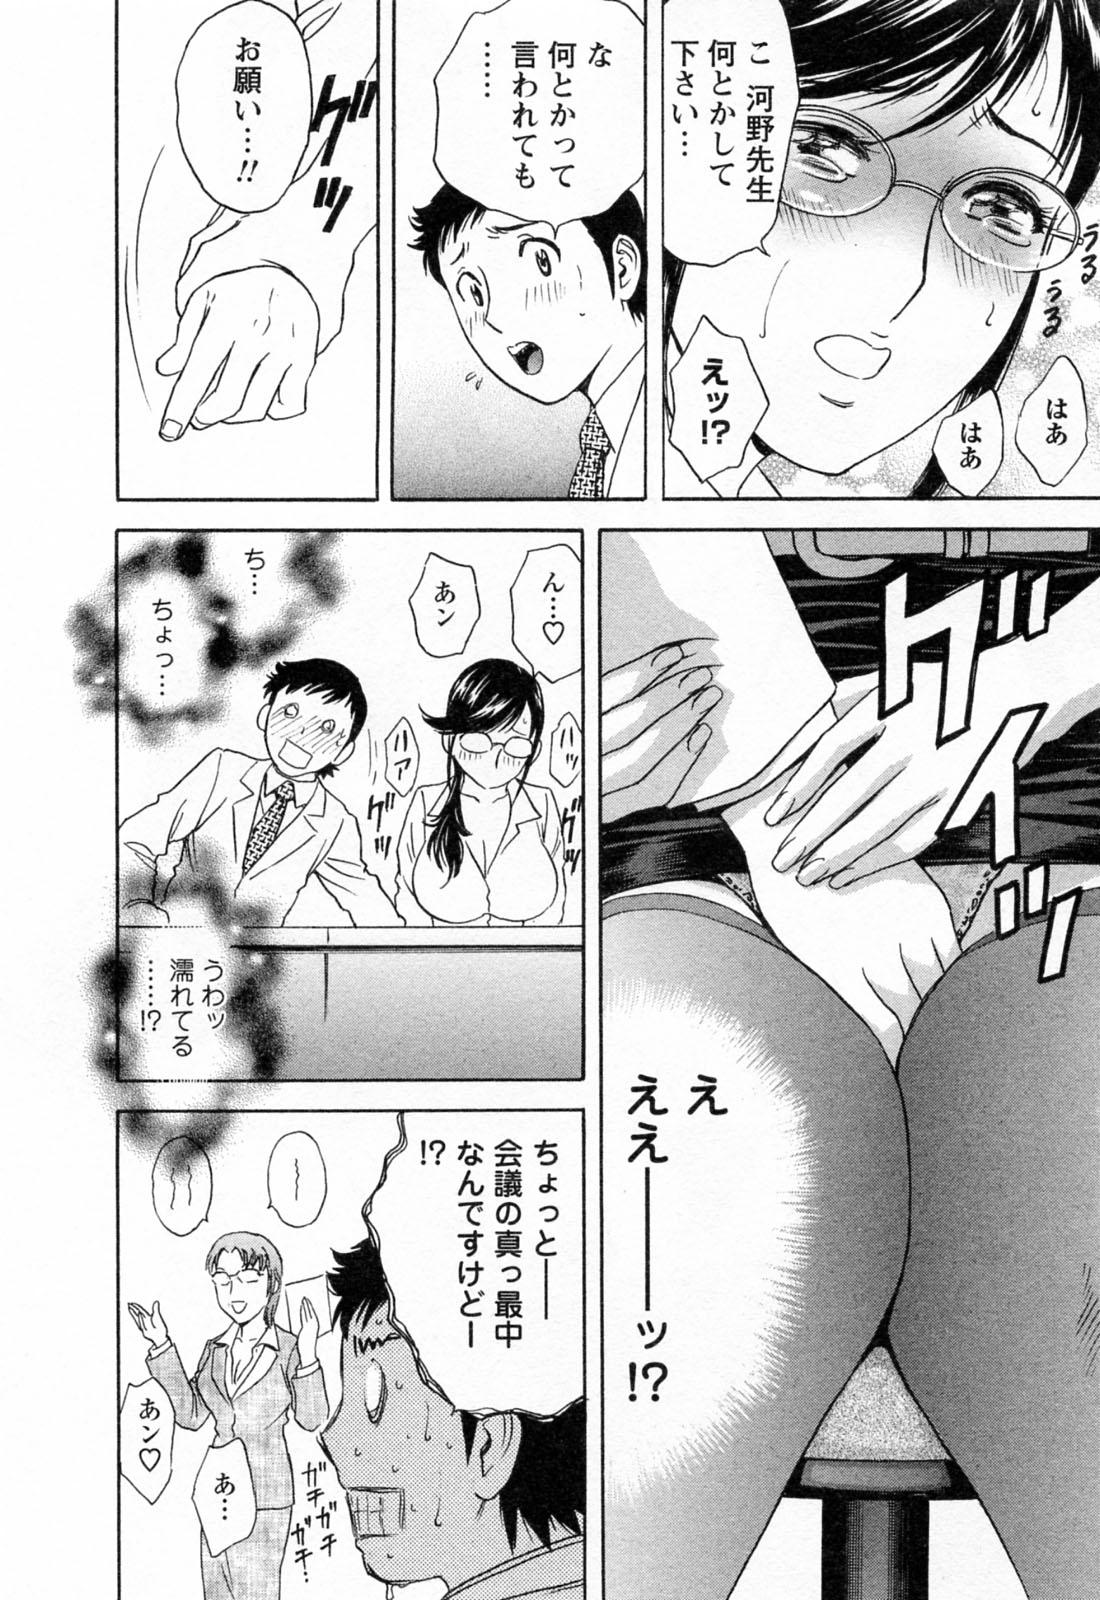 [Hidemaru] Mo-Retsu! Boin Sensei (Boing Boing Teacher) Vol.4 143